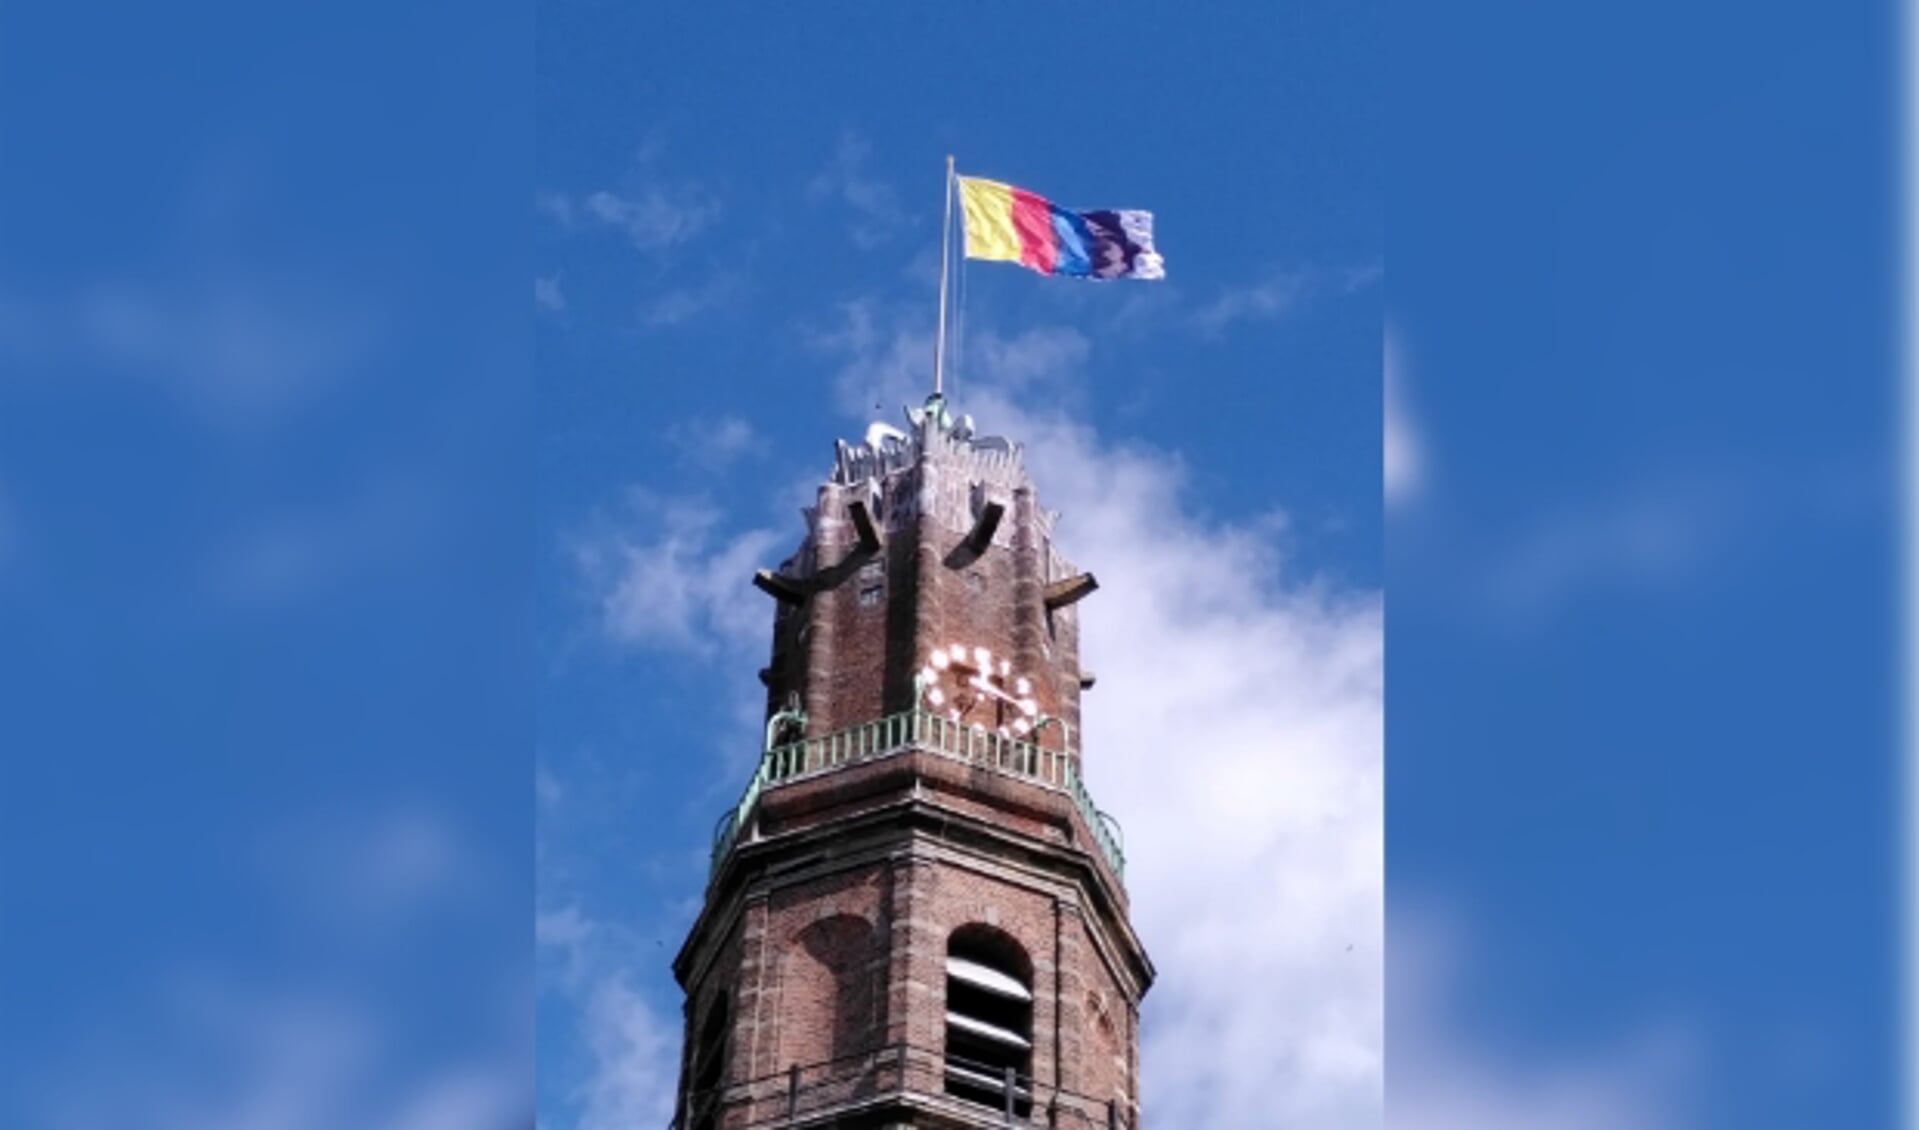 De nieuwe vlag, die blijft wapperen tot 31 januari 2021, is onderdeel van de tentoonstelling in Museum IJsselstein. (Foto: MIJ)